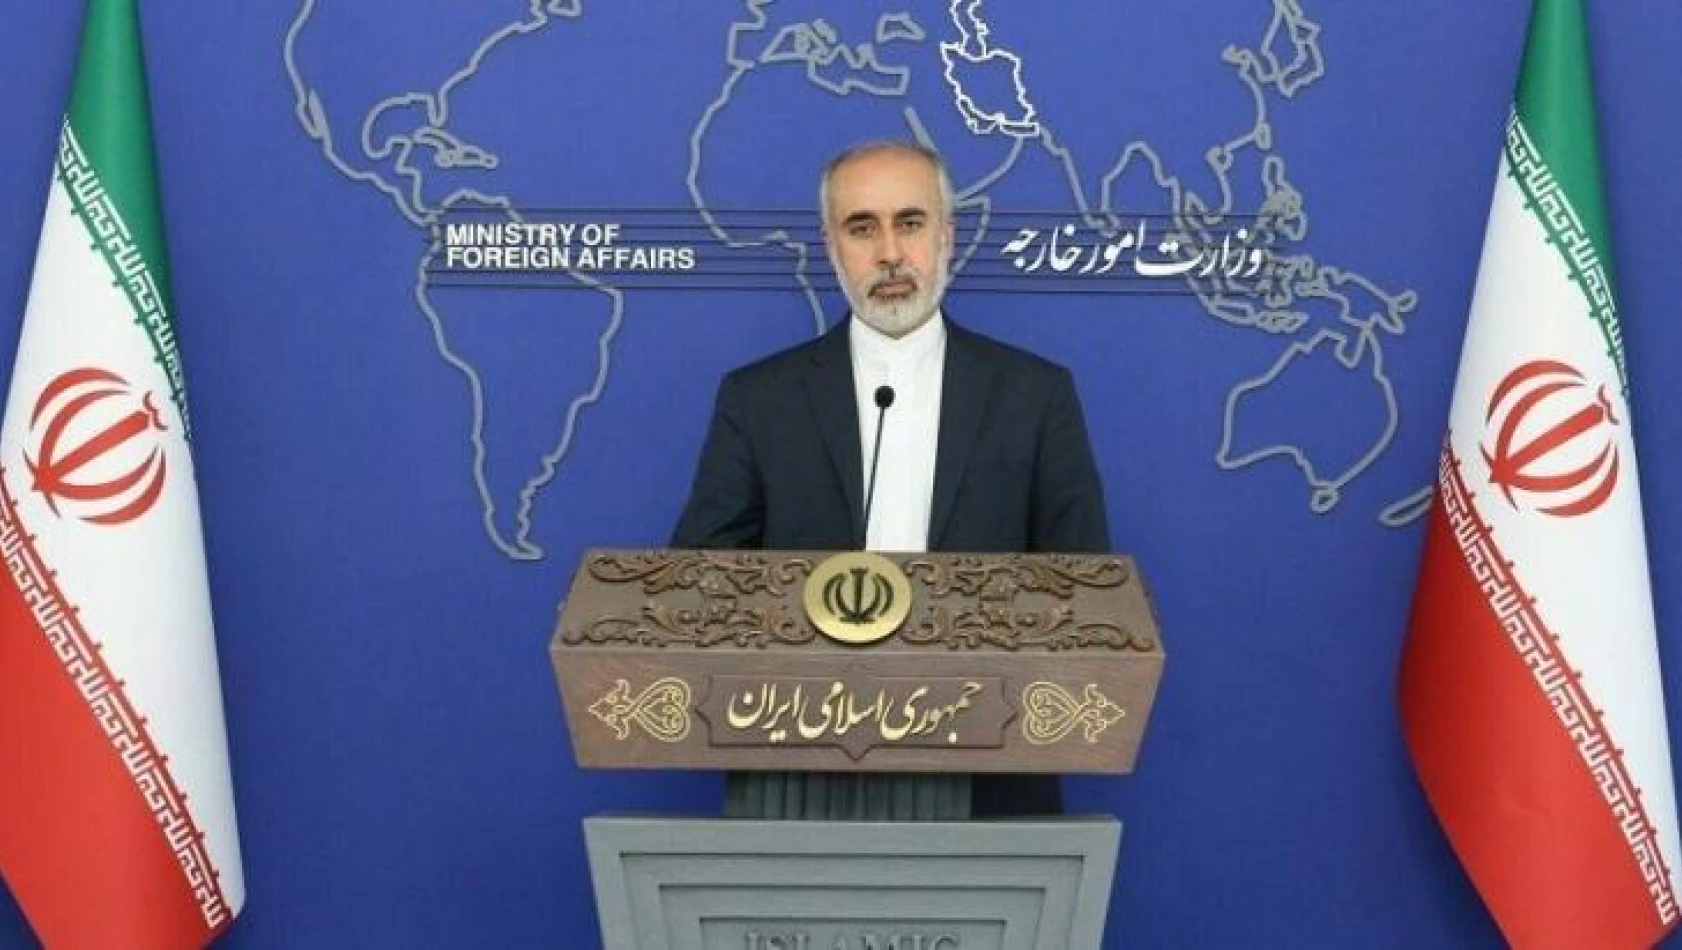 İran'dan Avrupa ülkelerinin nükleer müzakerelerdeki tutumlarına tepki